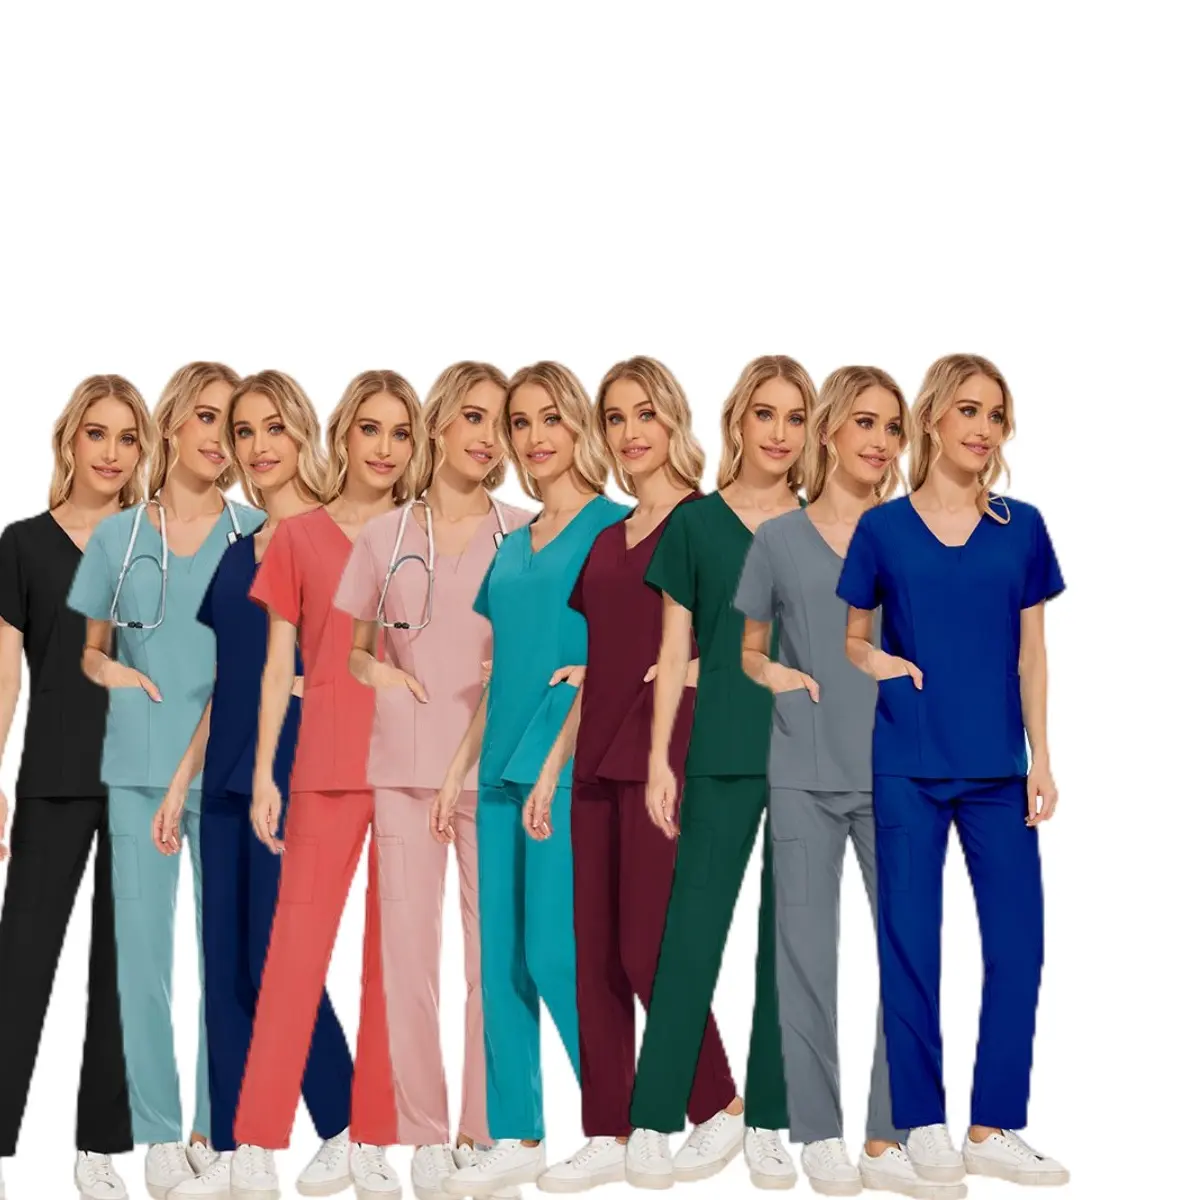 42025 en stock operación quirúrgica ropa quirúrgica uniformes quirúrgicos mujeres pijama quirúrgico estéril